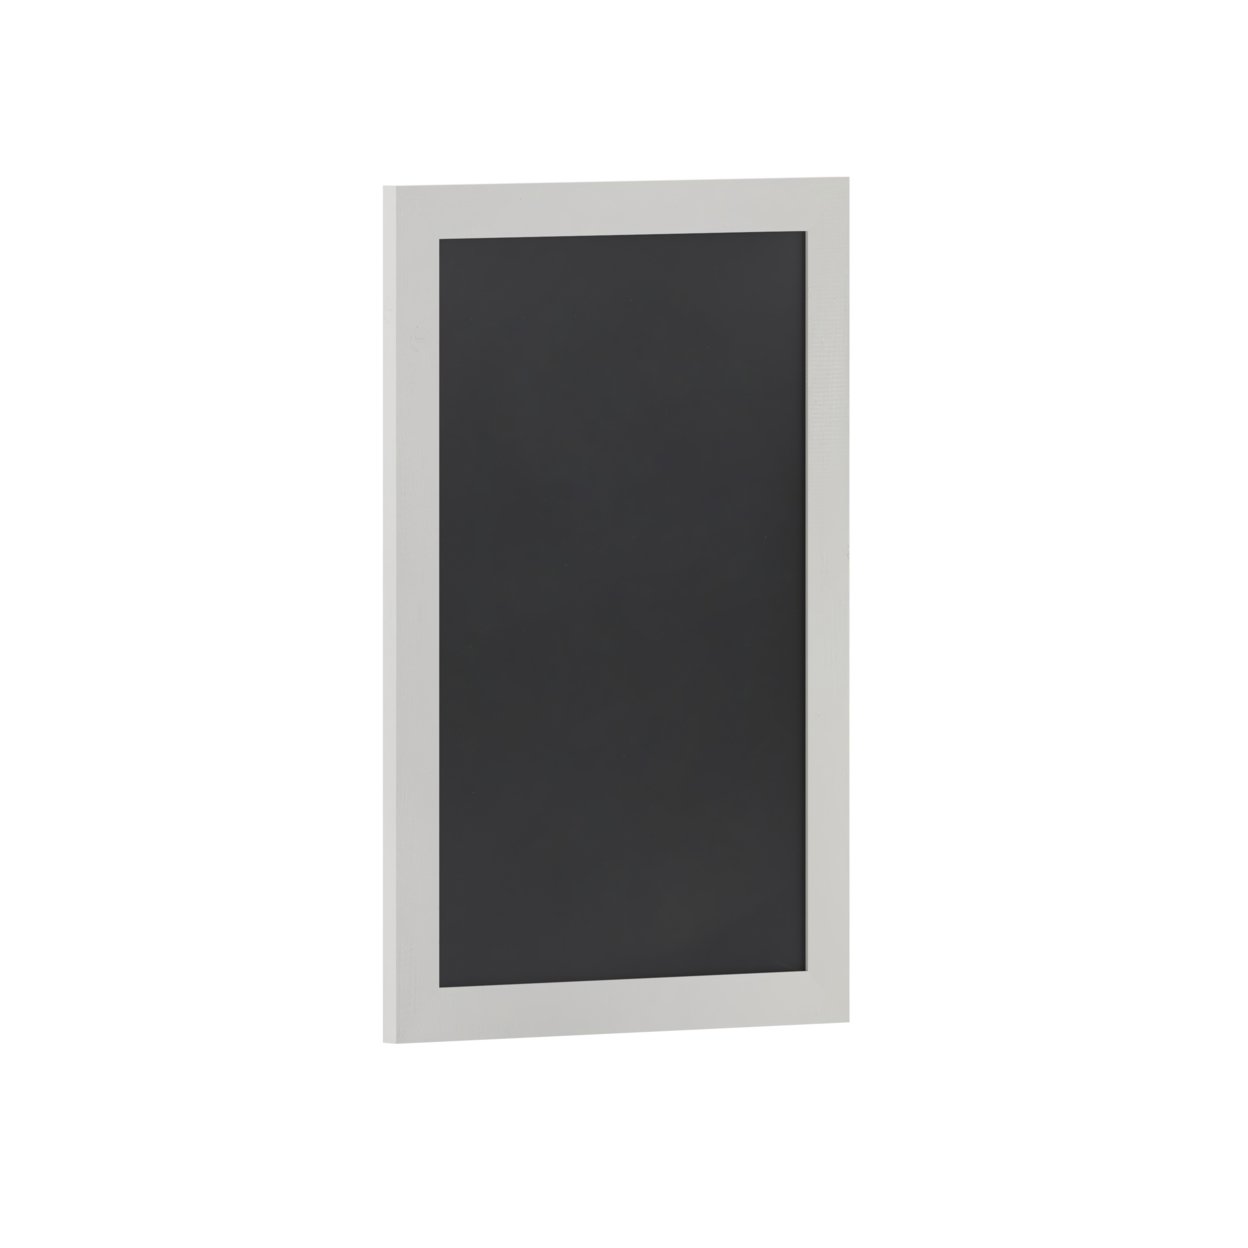 30 Inch Wall Hanging Chalkboard, Sleek Wood Frame, White And Black